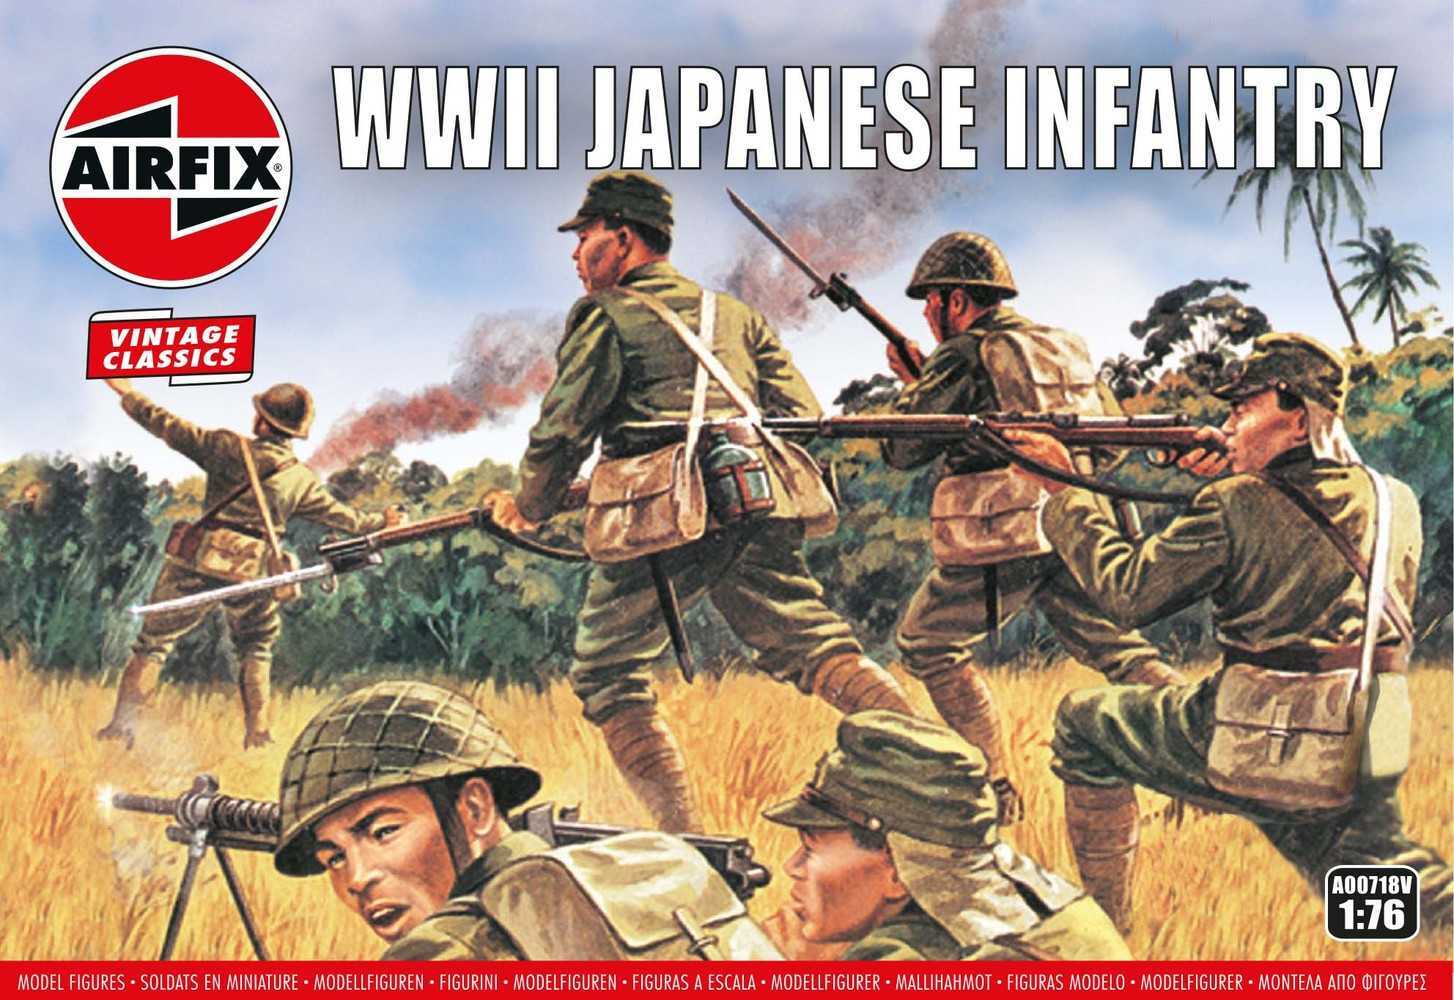 Classic Kit VINTAGE figurky A00718V - Japanese Infantry (1:76)